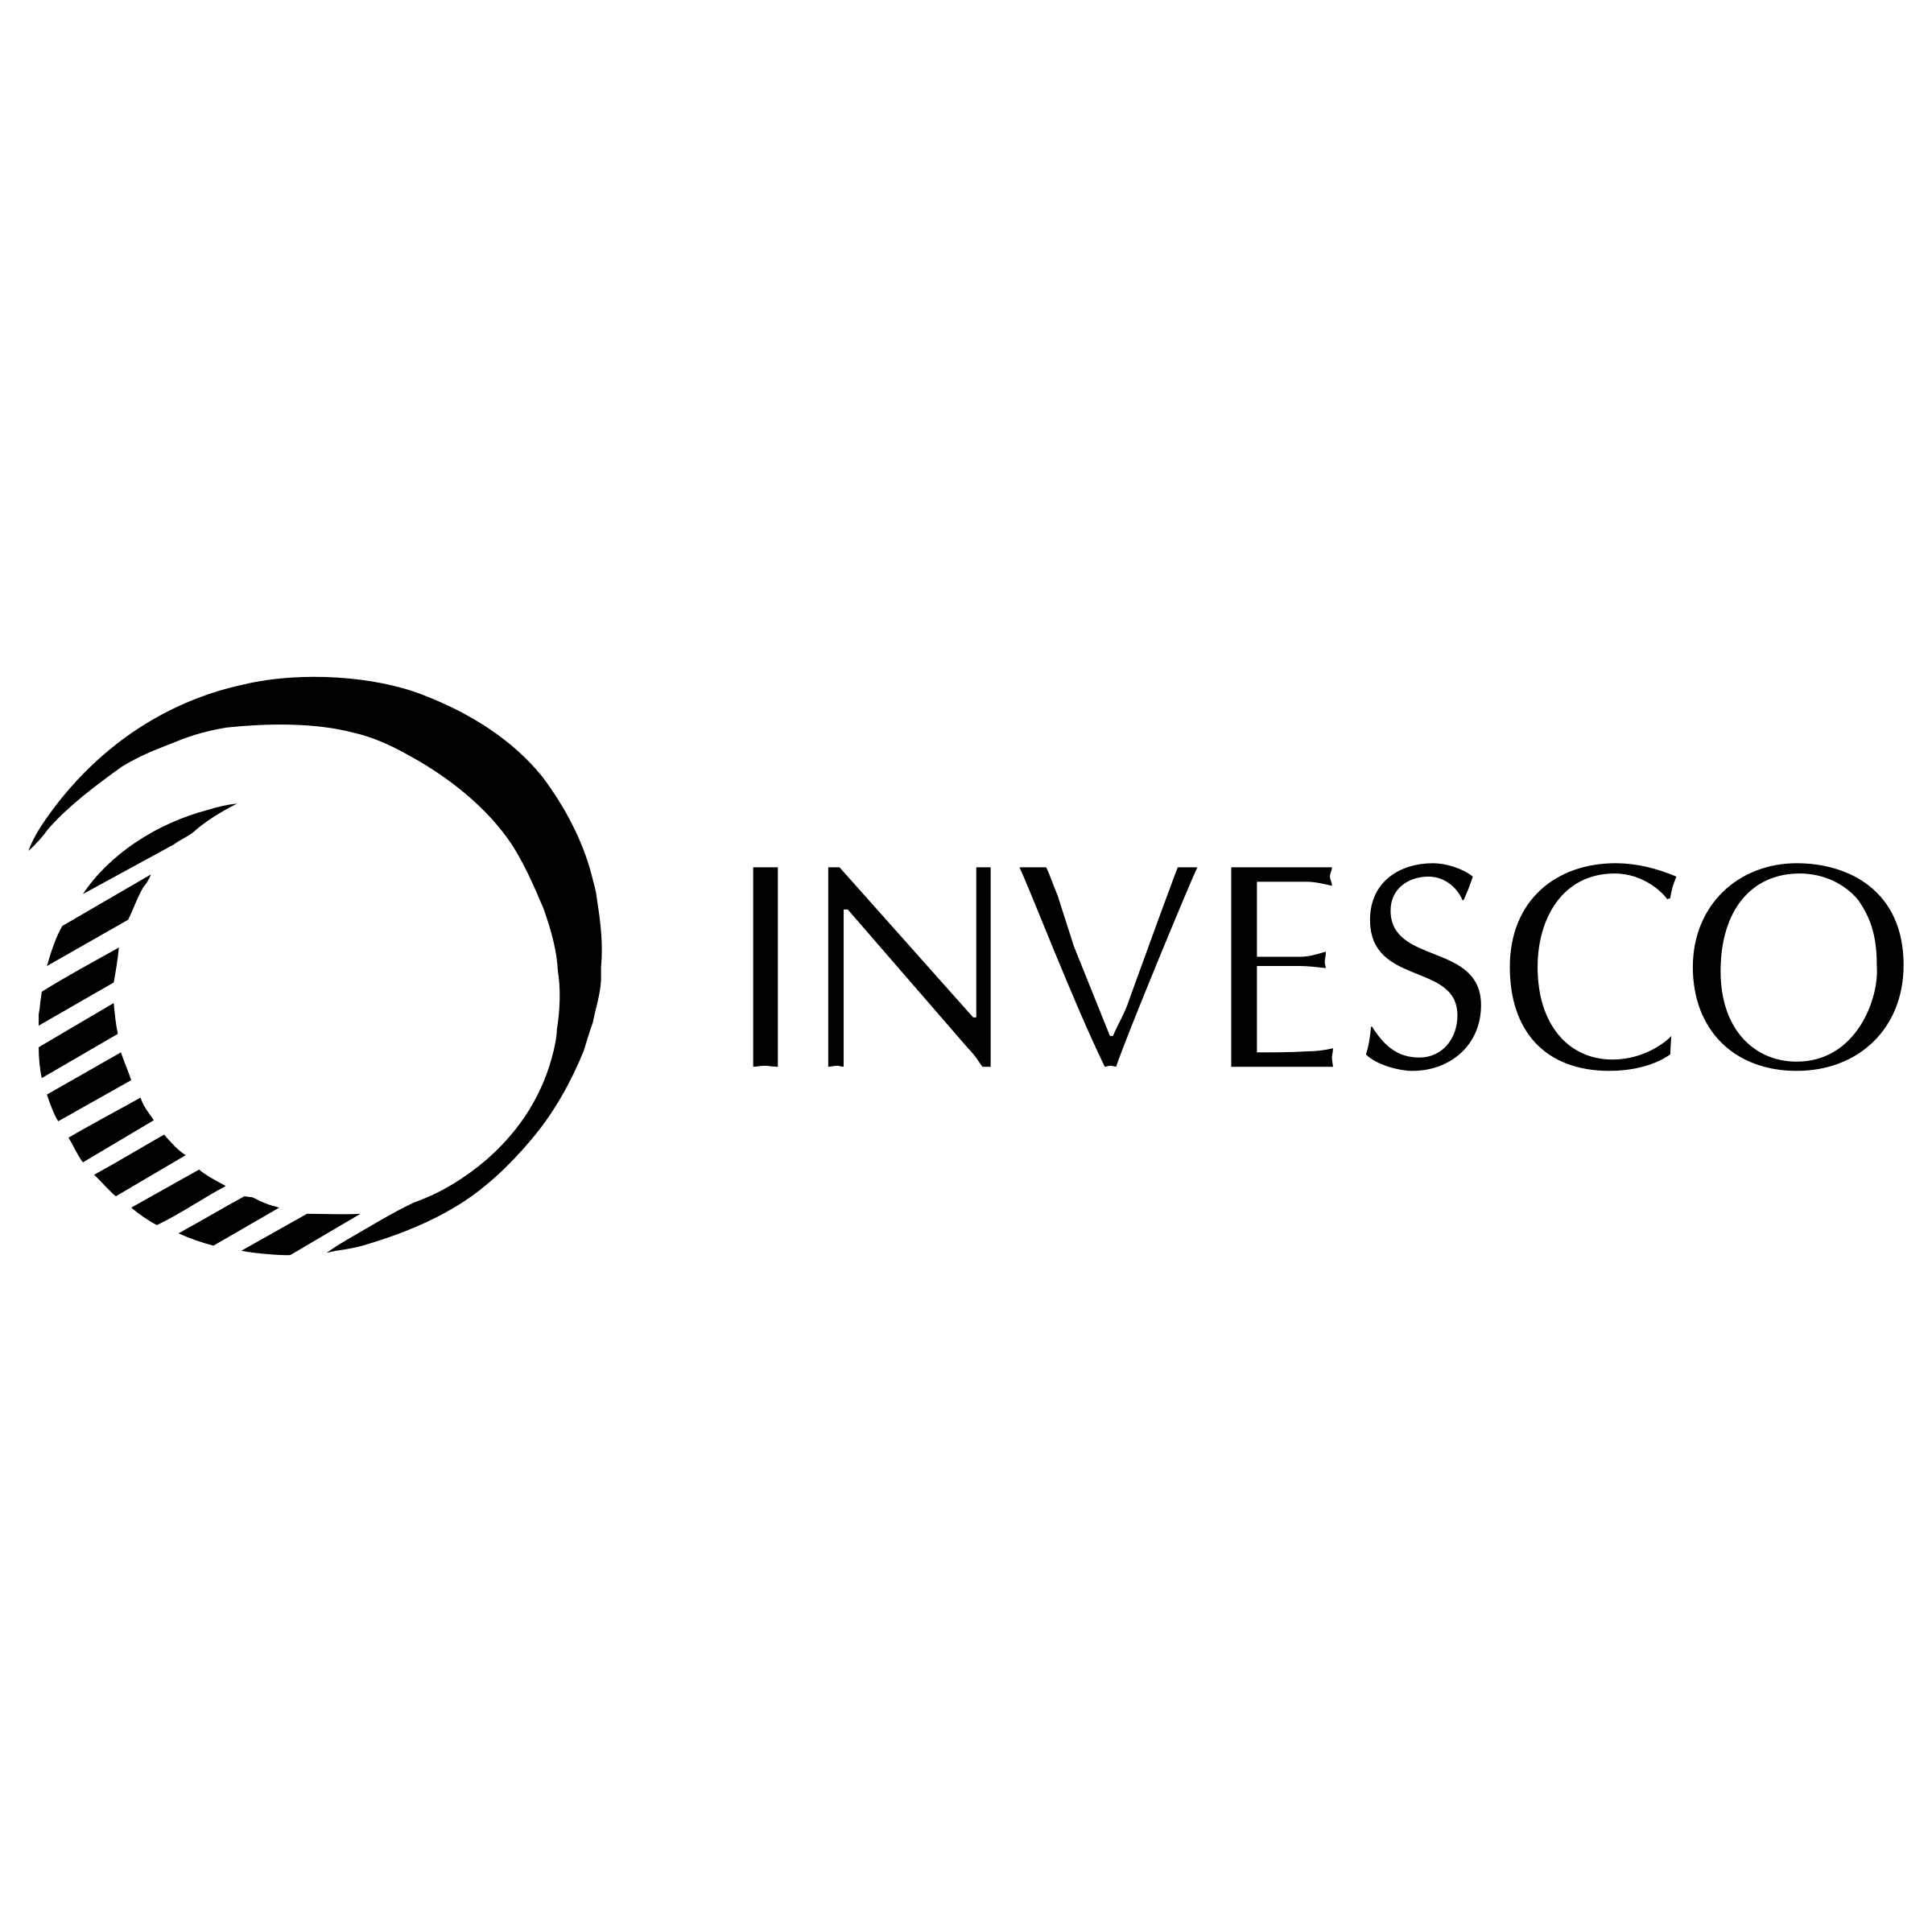 Invesco Logo - Invesco Logo PNG Transparent & SVG Vector - Freebie Supply